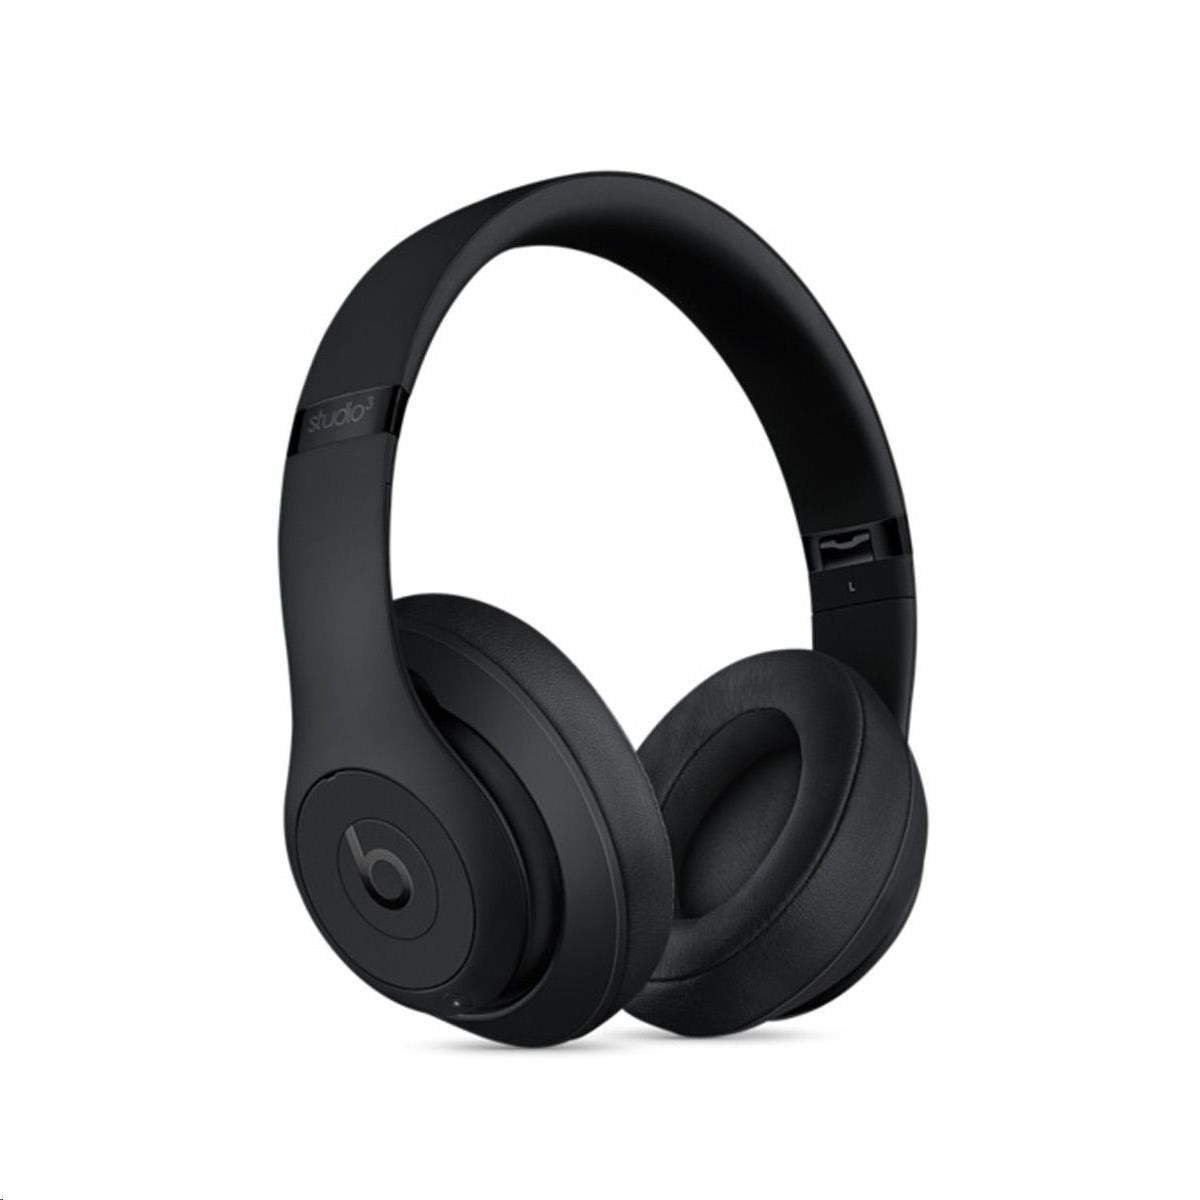 Beats Studio3 Wireless Over-Ear Headphones - Matte Black1 